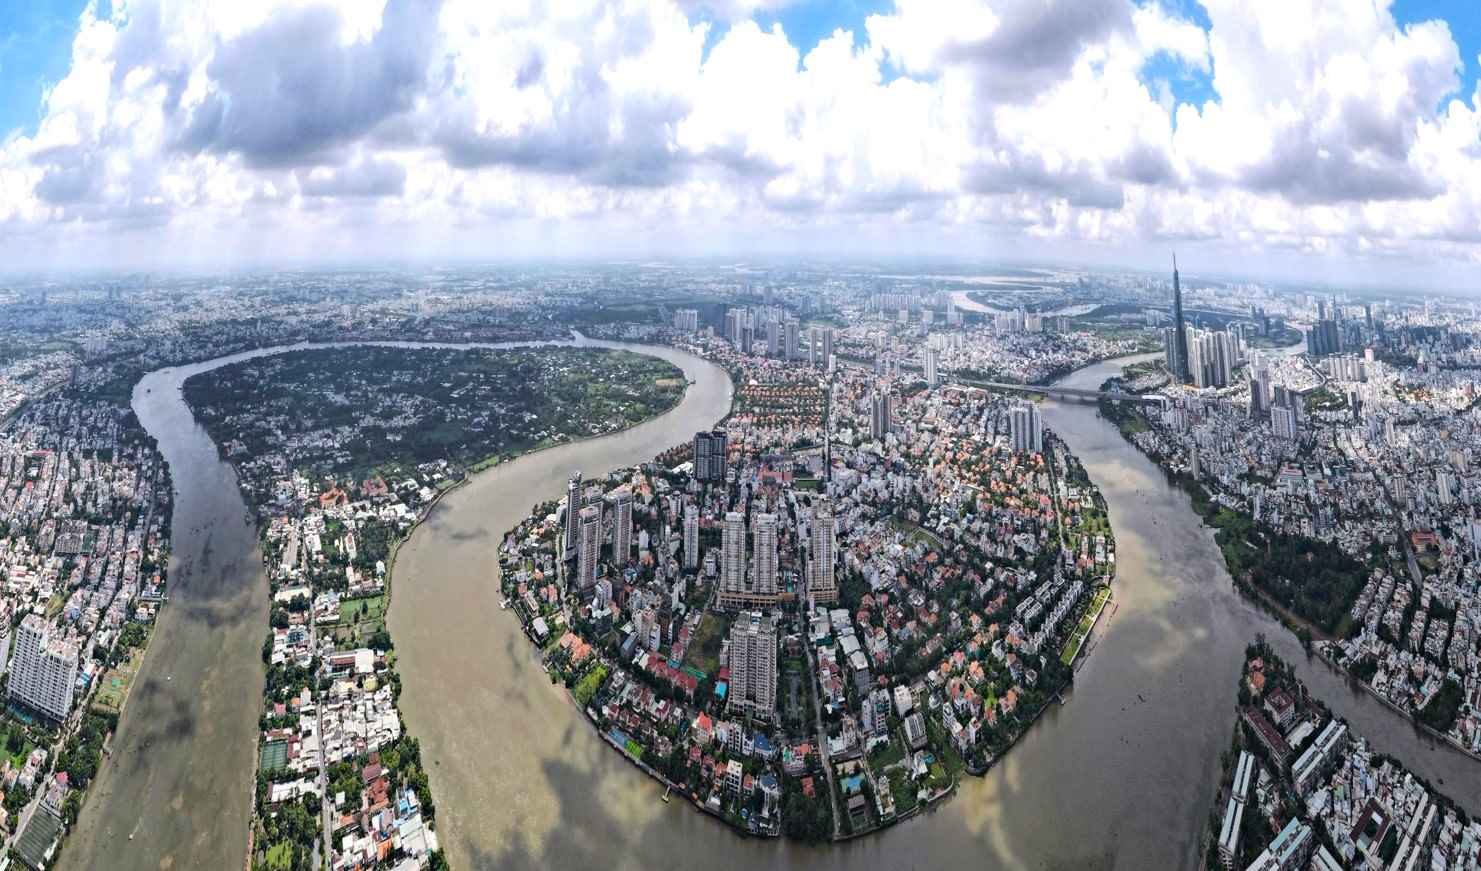 TP.HCM xây dựng hành lang sông Sài Gòn, học hỏi kinh nghiệm từ sông Seine - 2